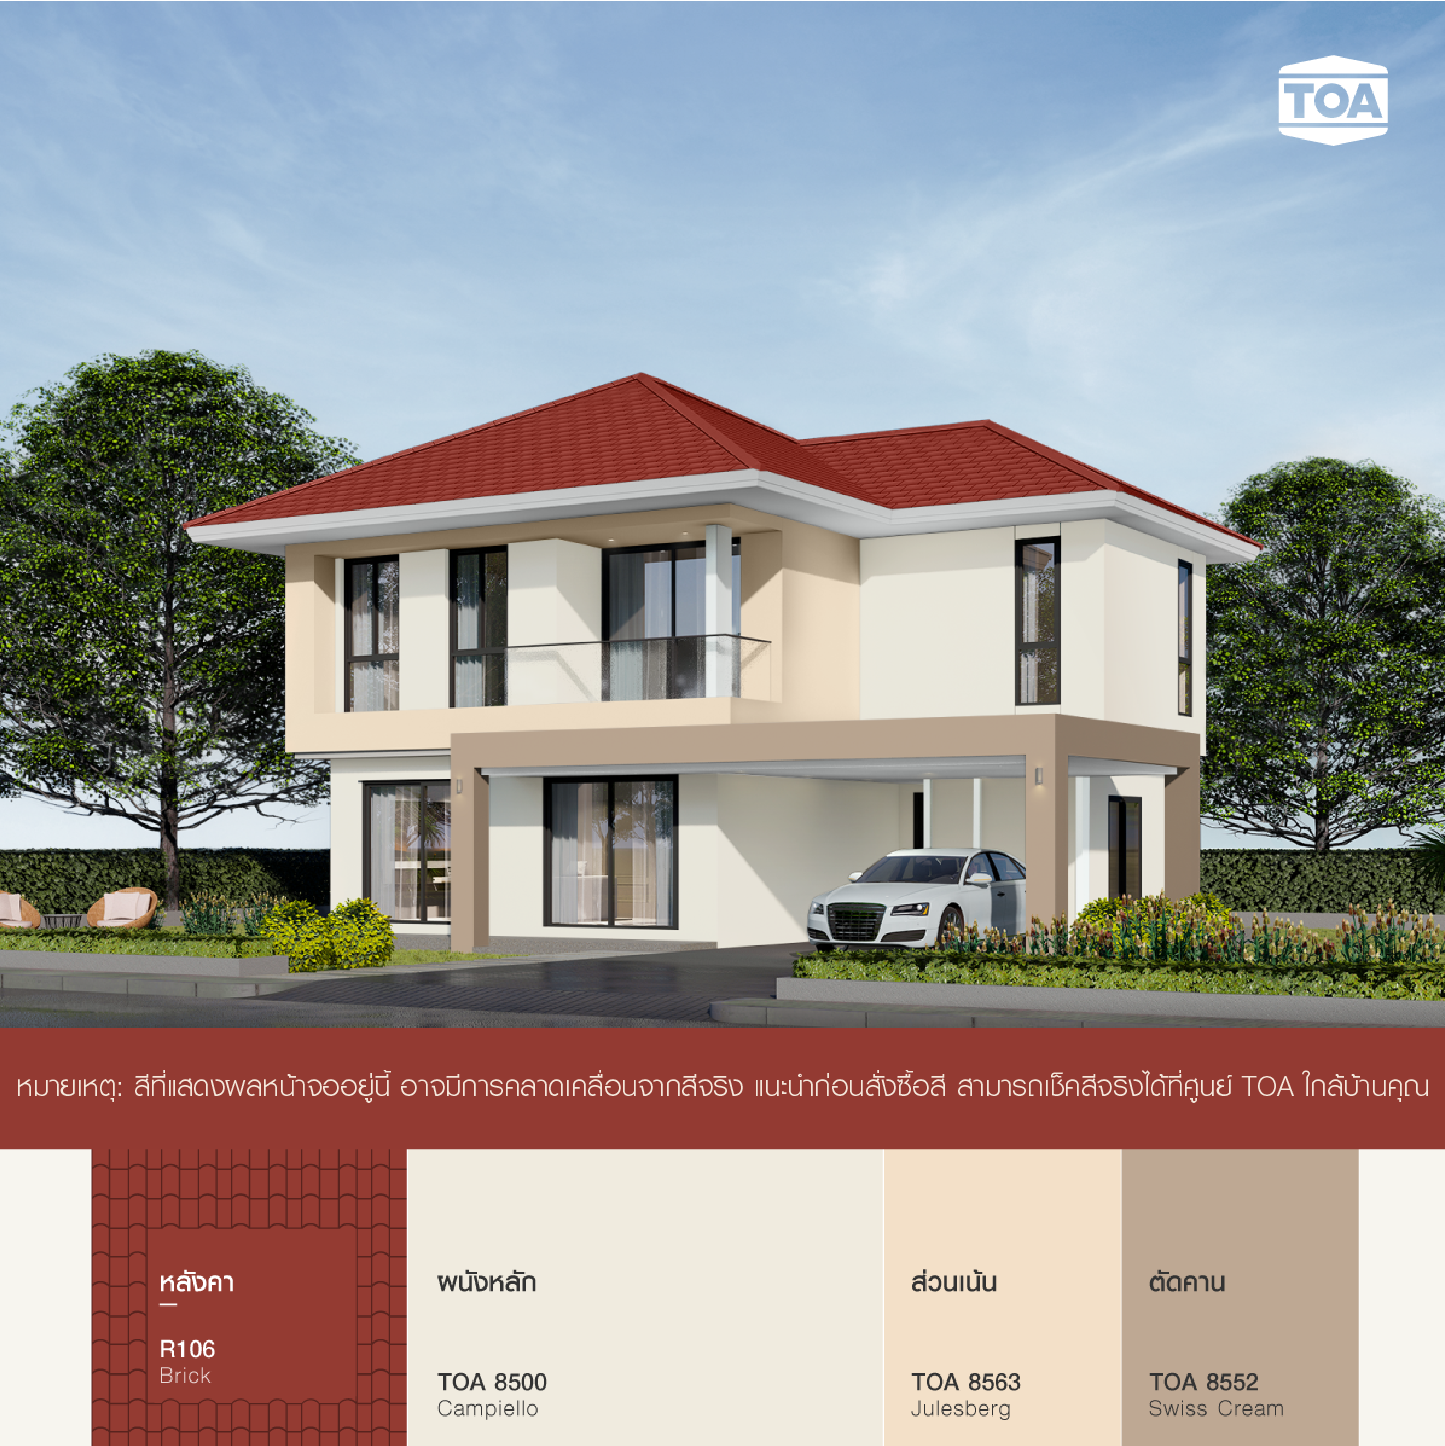 บ้าน หลังคา สี แดง อิฐ ทาสีตัวบ้านสีขาว TOA 8500 เป็นผนังหลัก ปละใช้สีส้มอ้อน TOA 8563 เป็นส่วนเน้น 